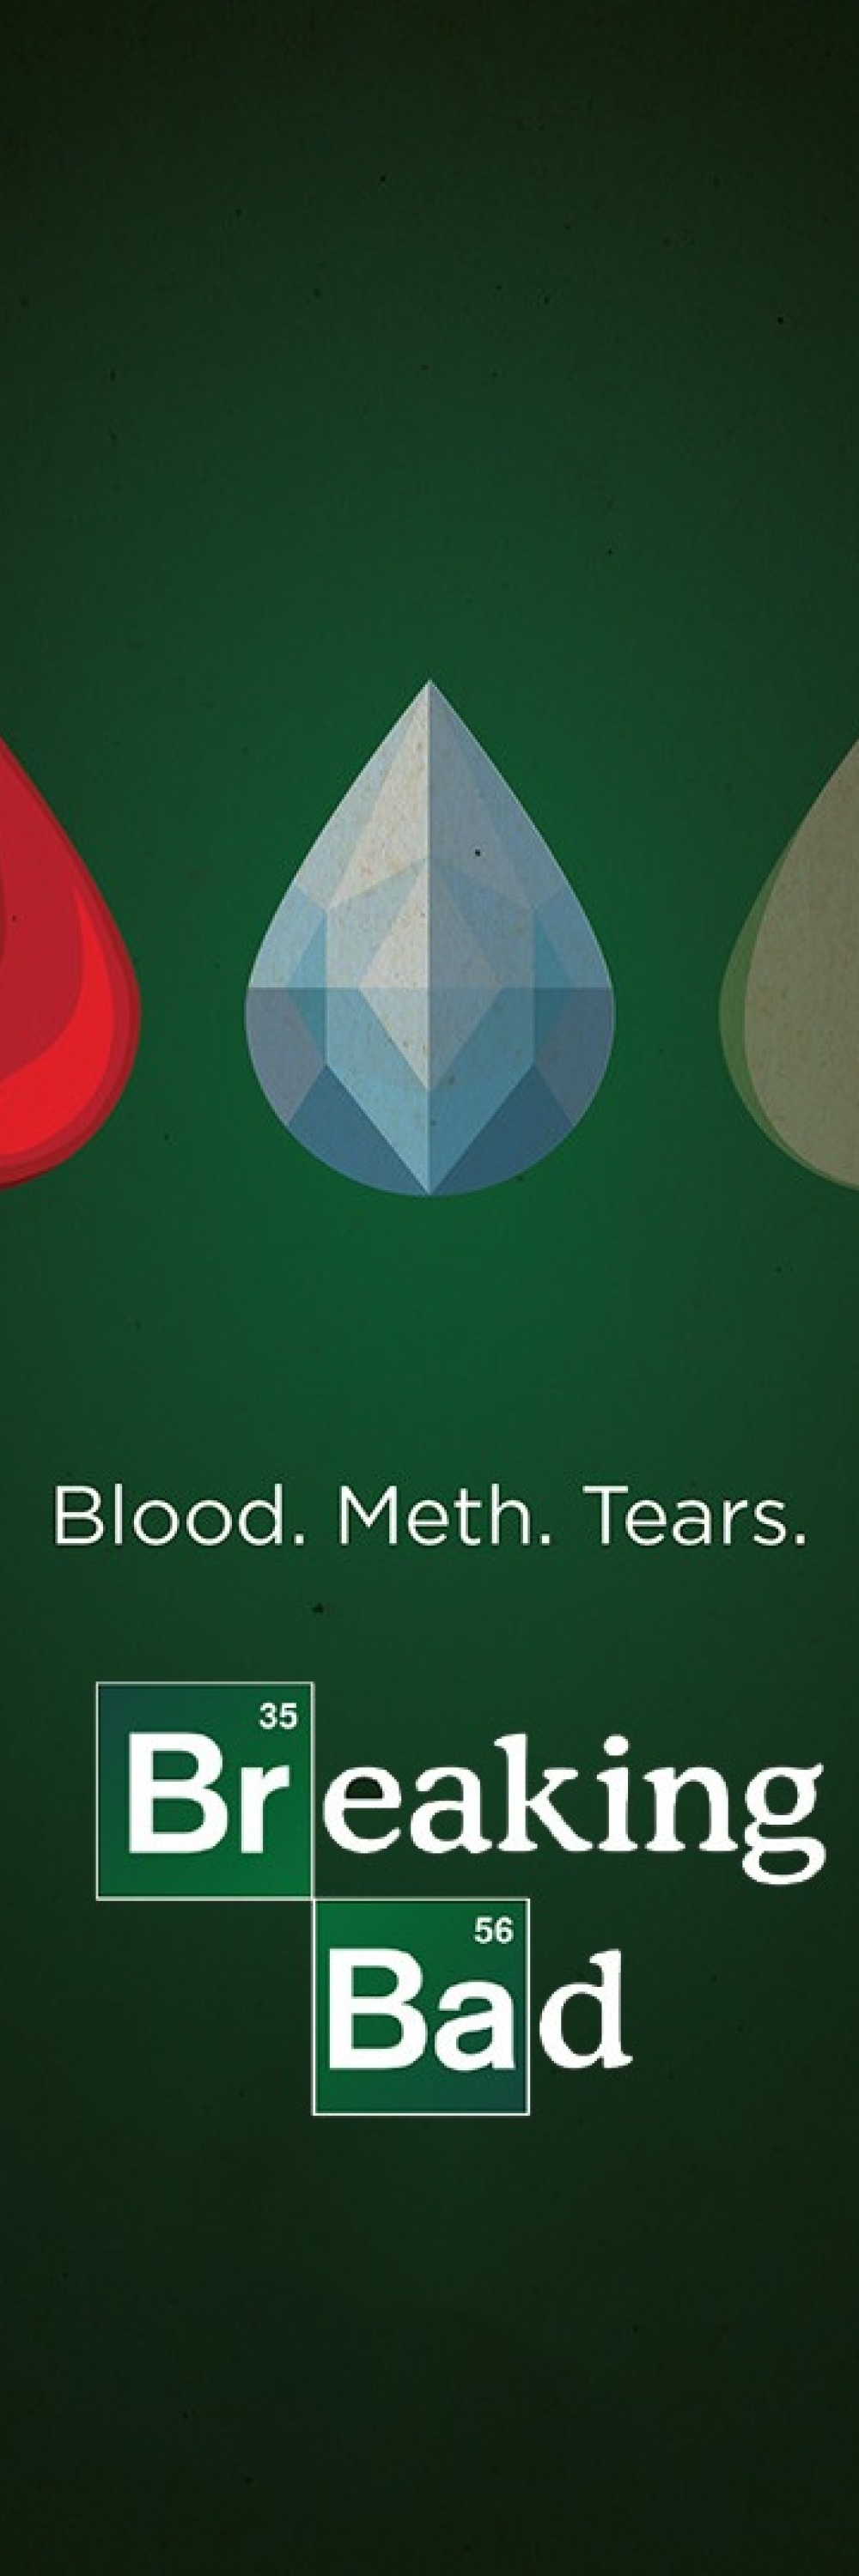 1000x3000 Resolution Breaking Bad - Blood, Meth & Tears Poster ...